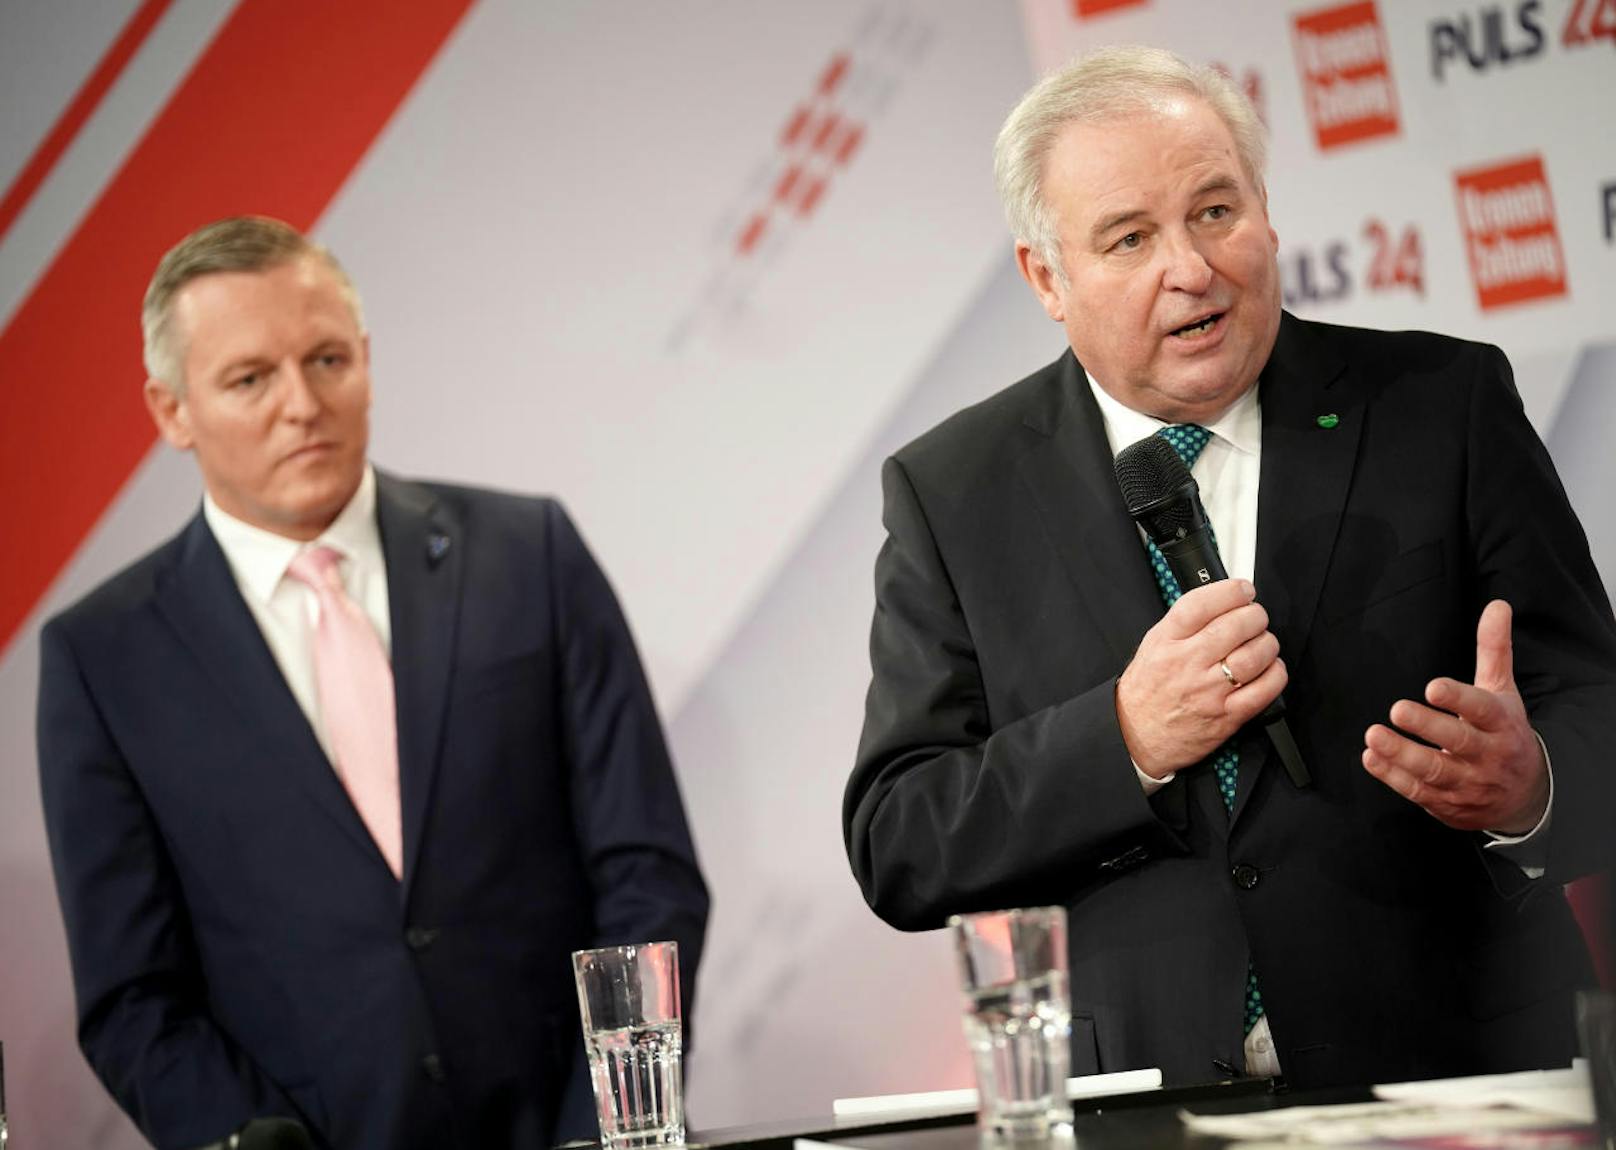 Mario Kunasek (FPÖ) und Hermann Schützenhöfer (ÖVP) am Sonntag, 24. November 2019, bei einem TV-Einstieg im Rahmen der steirischen Landtagswahl in Graz.